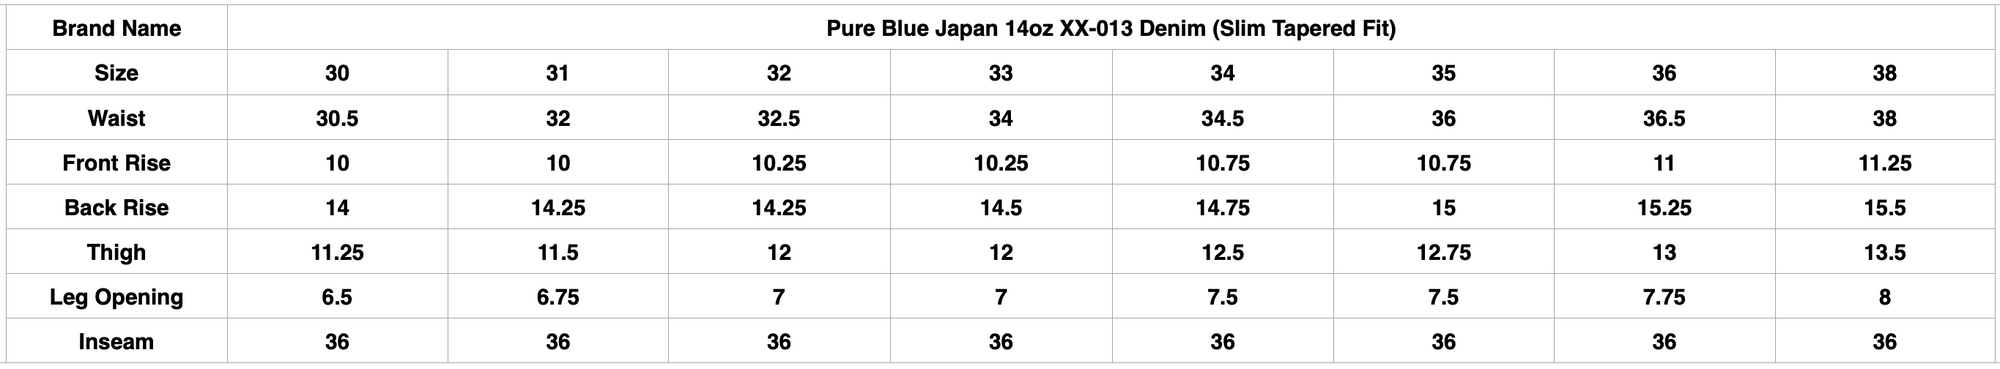 Pure Blue Japan 14oz XX-013 Denim (Slim Tapered Fit)